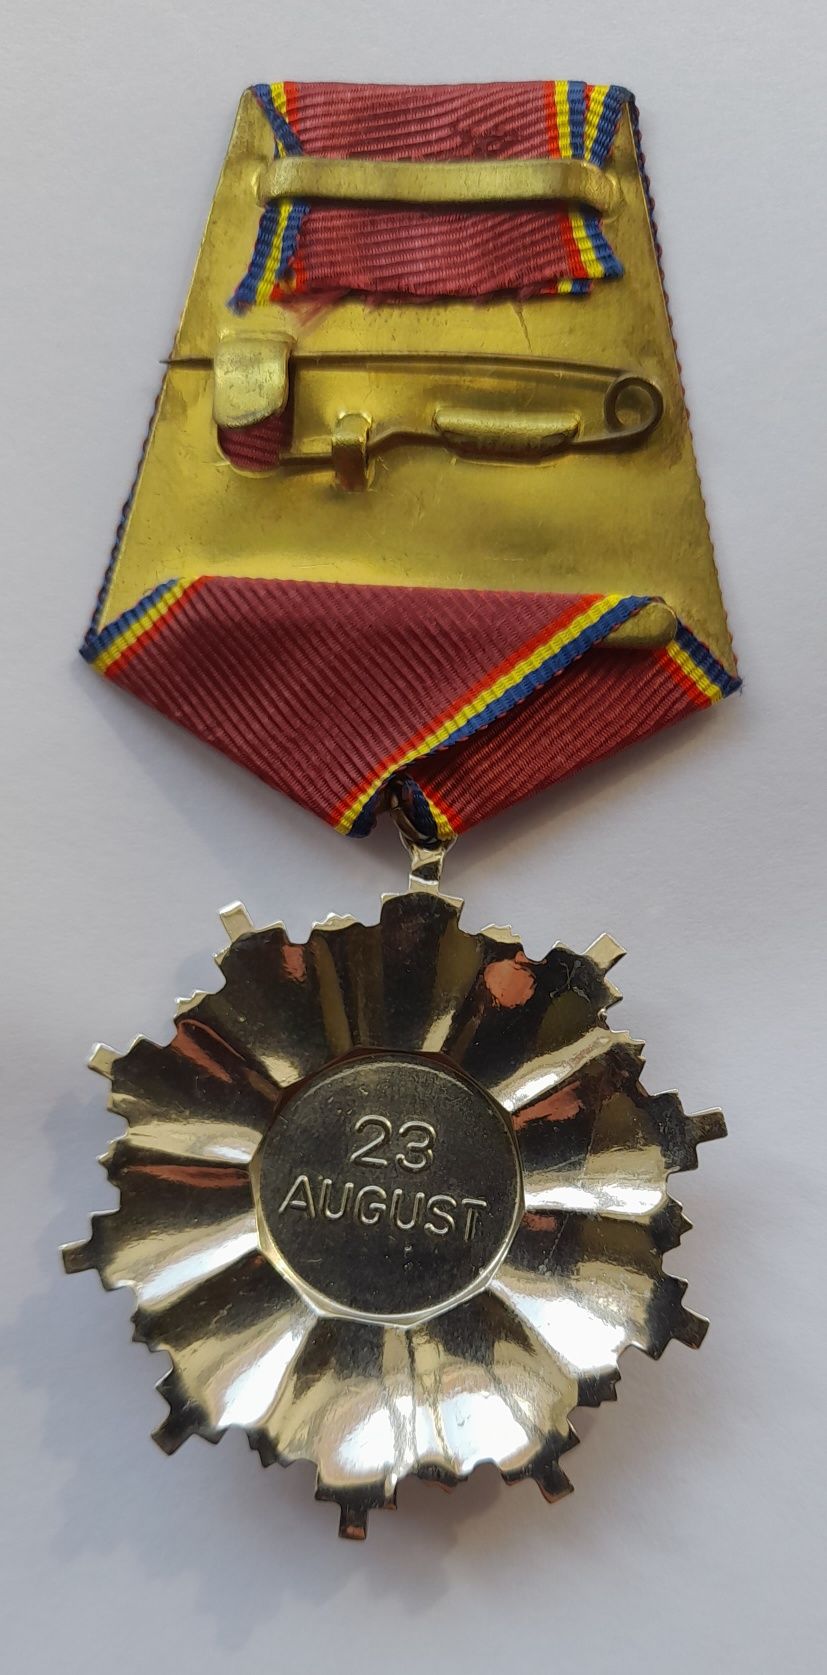 Ordinul 23 august 1944 RSR clasa 4 decoratie